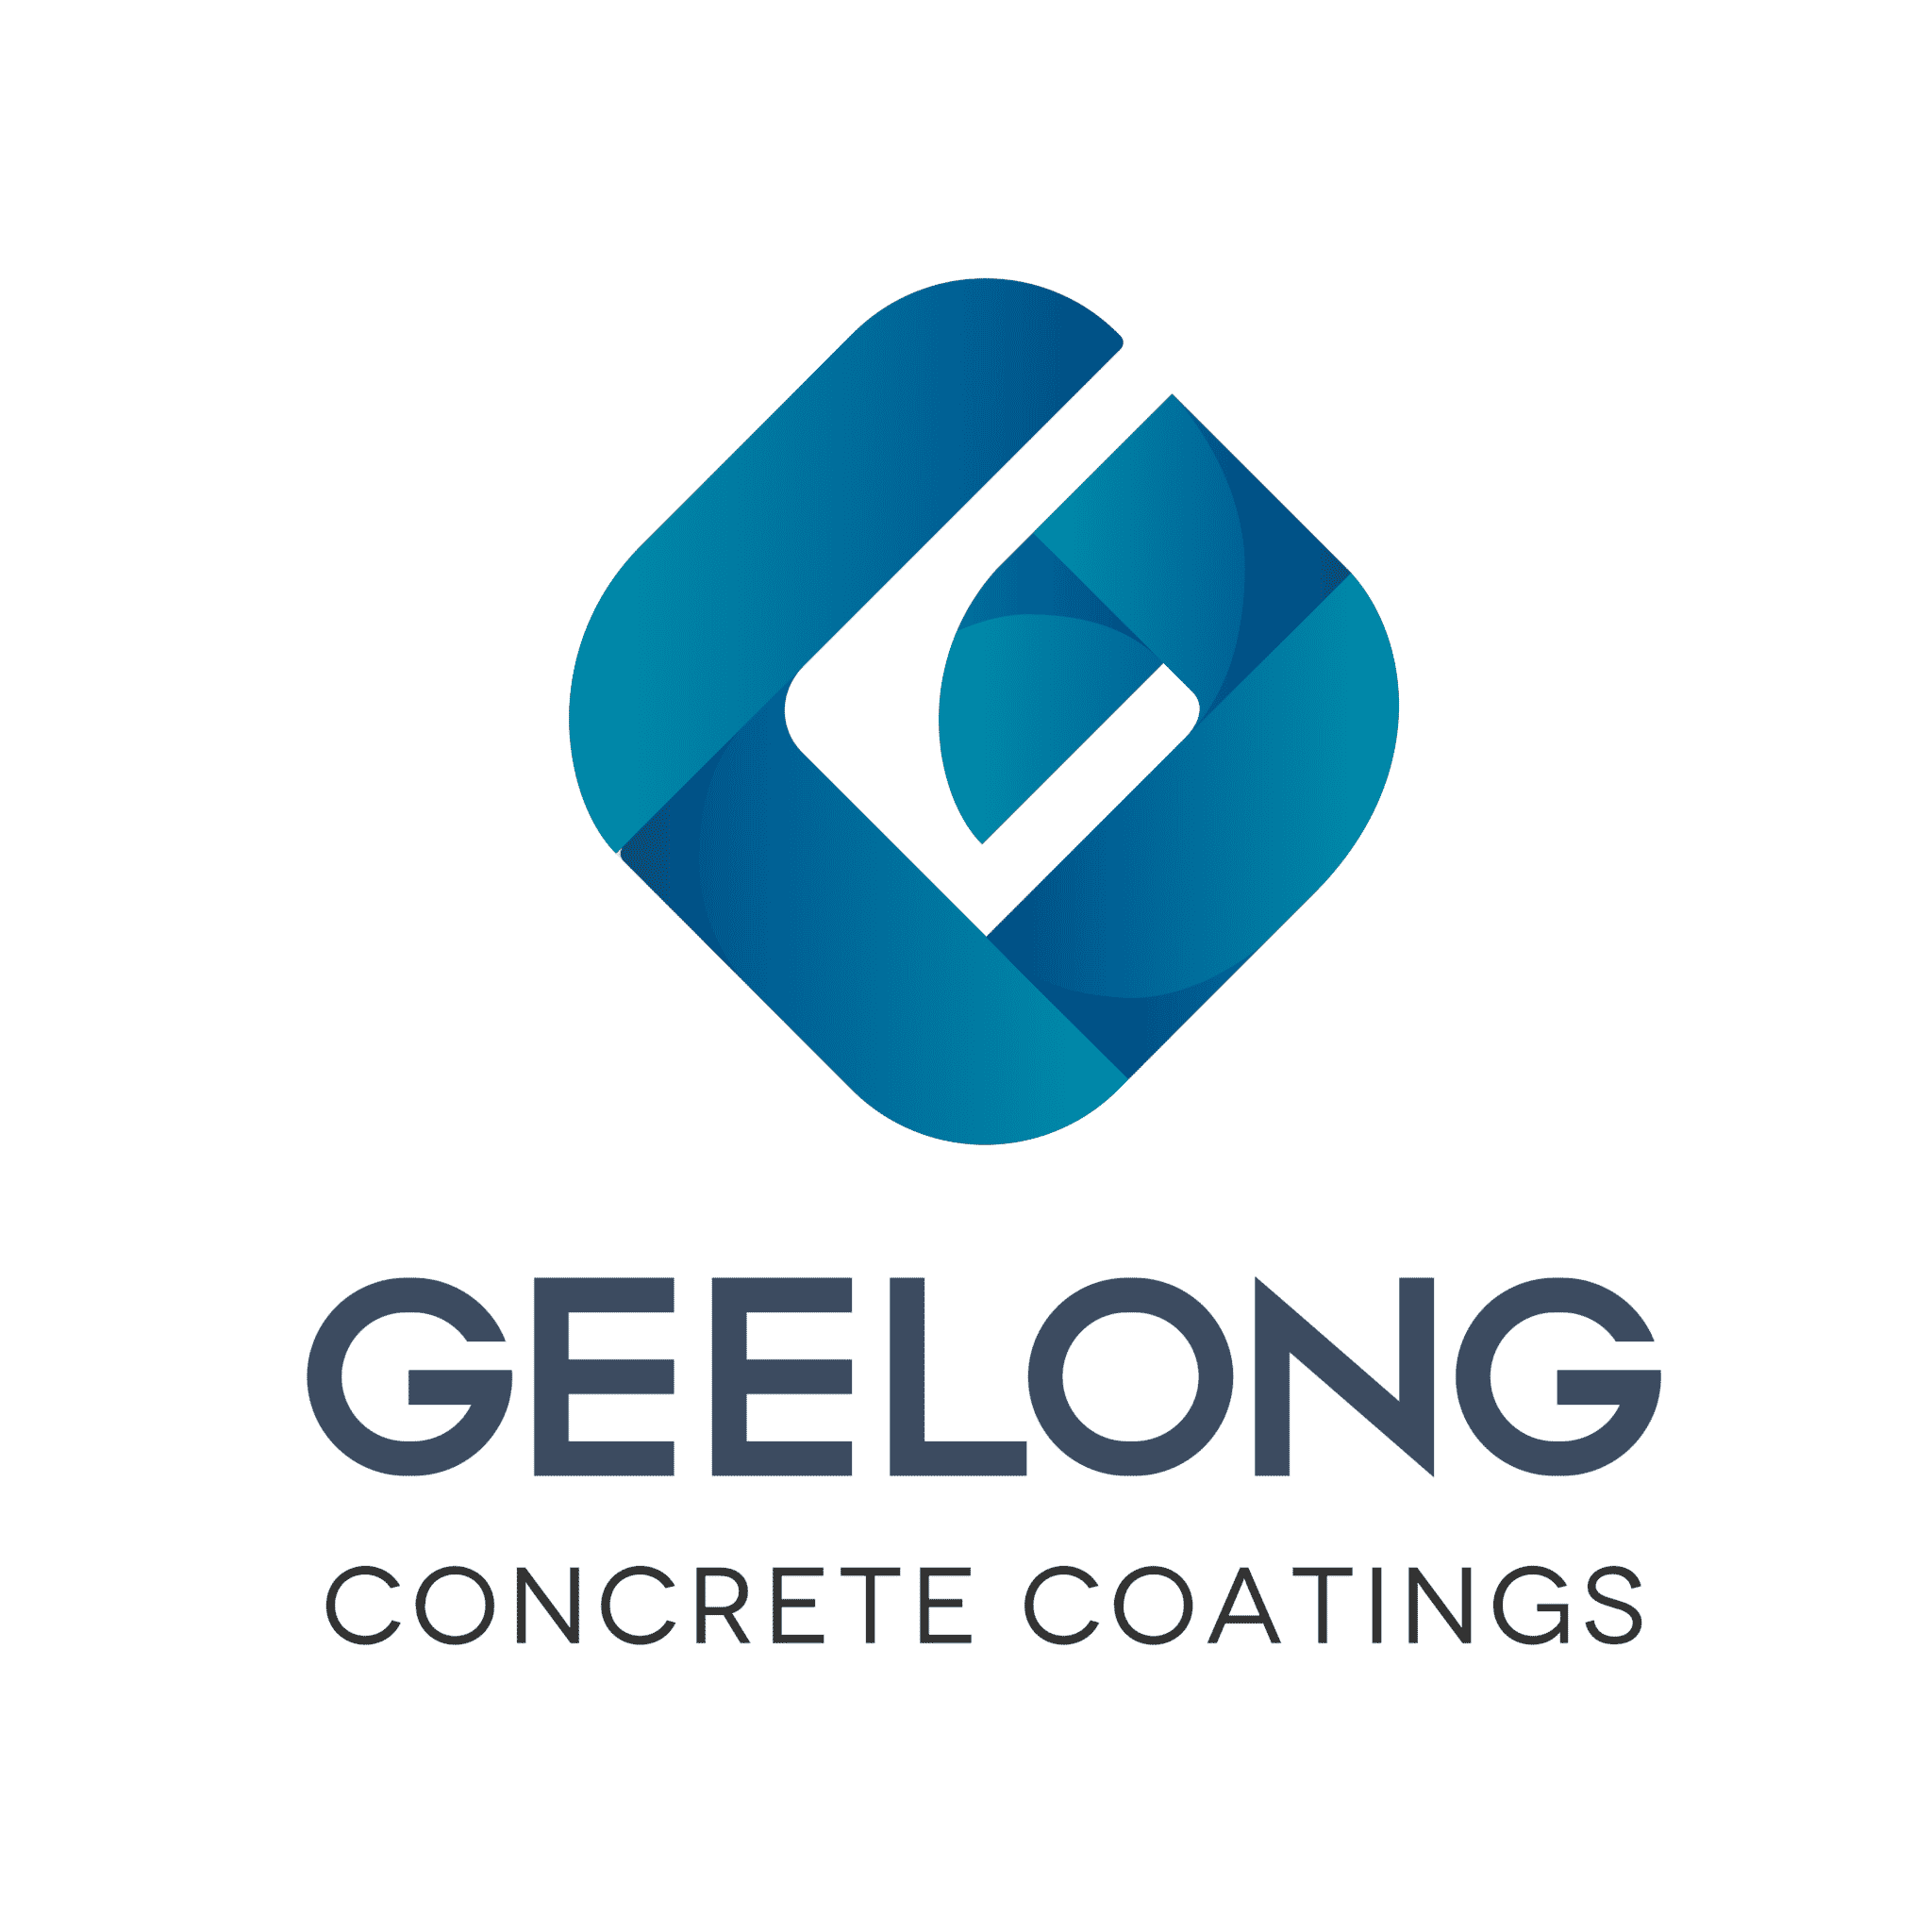 epoxy floor coating geelong, epoxy floor coating, concrete driveway geelong, epoxy floor coatings, concrete driveways geelong, epoxy flooring geelong